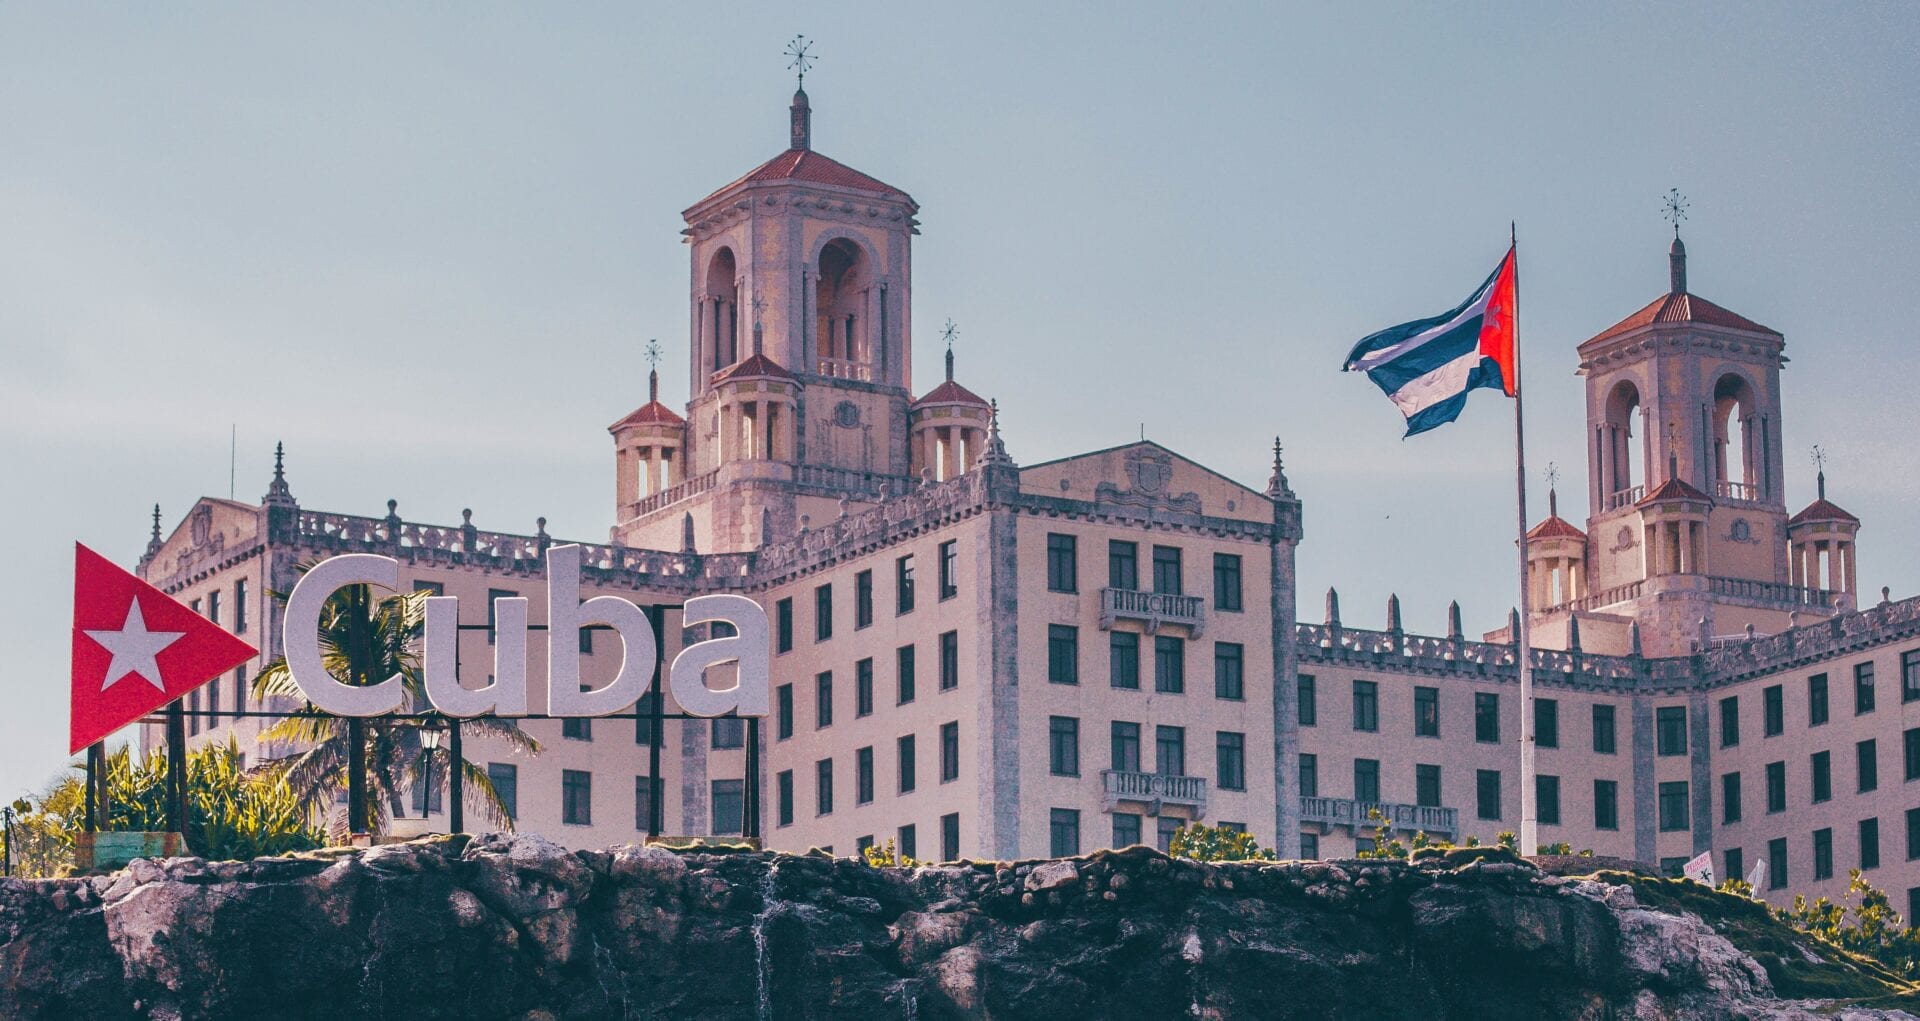 Viajes a Cuba